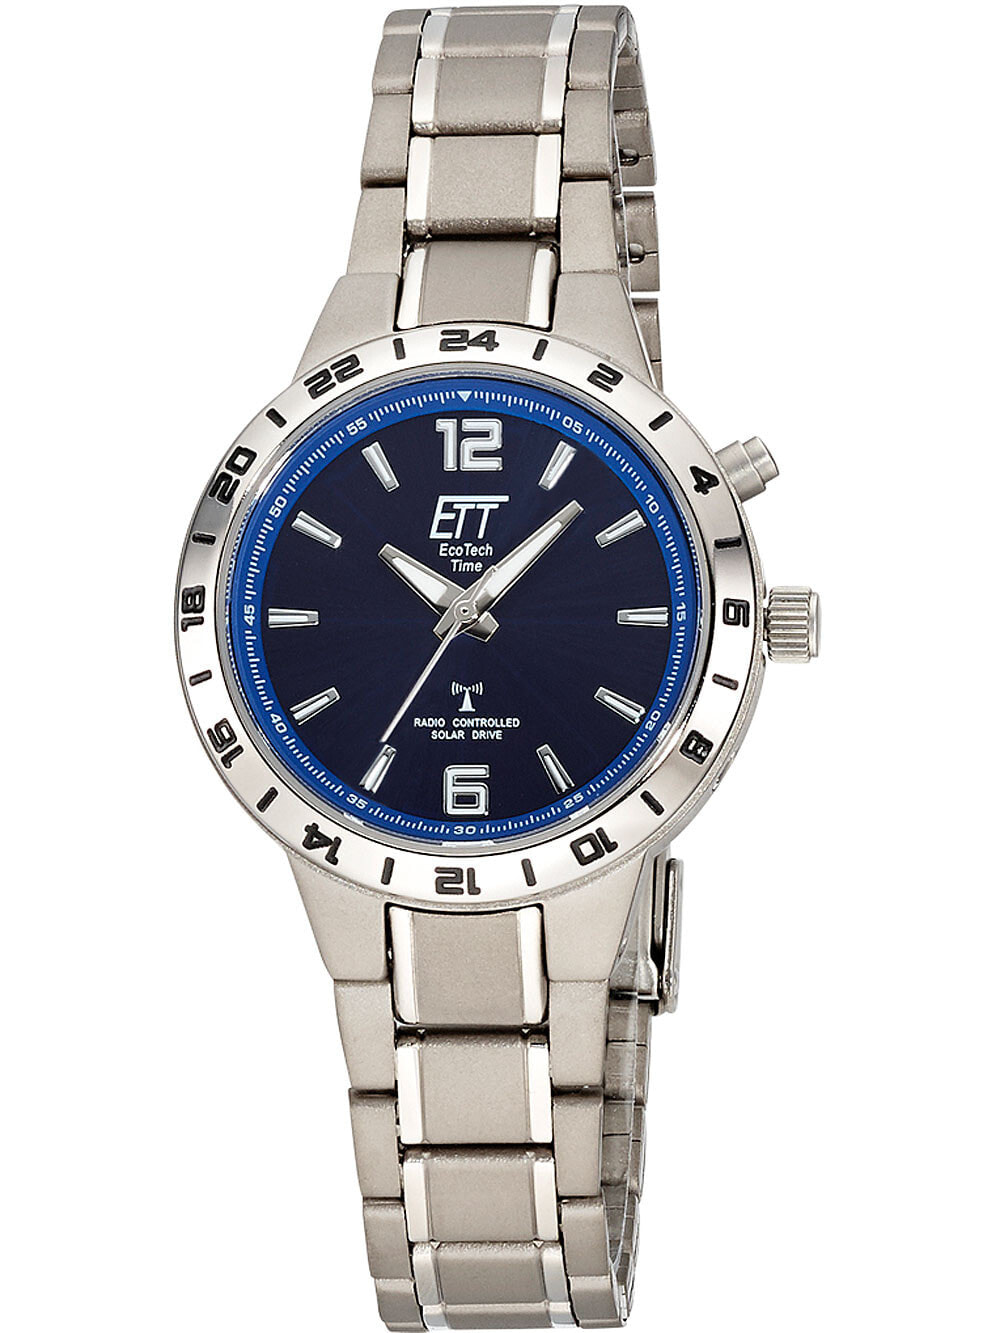 Мужские наручные часы с серебряным браслетом ETT ELT-11447-31M Funk Solar Drive Basic Titan ladies 32mm 5ATM